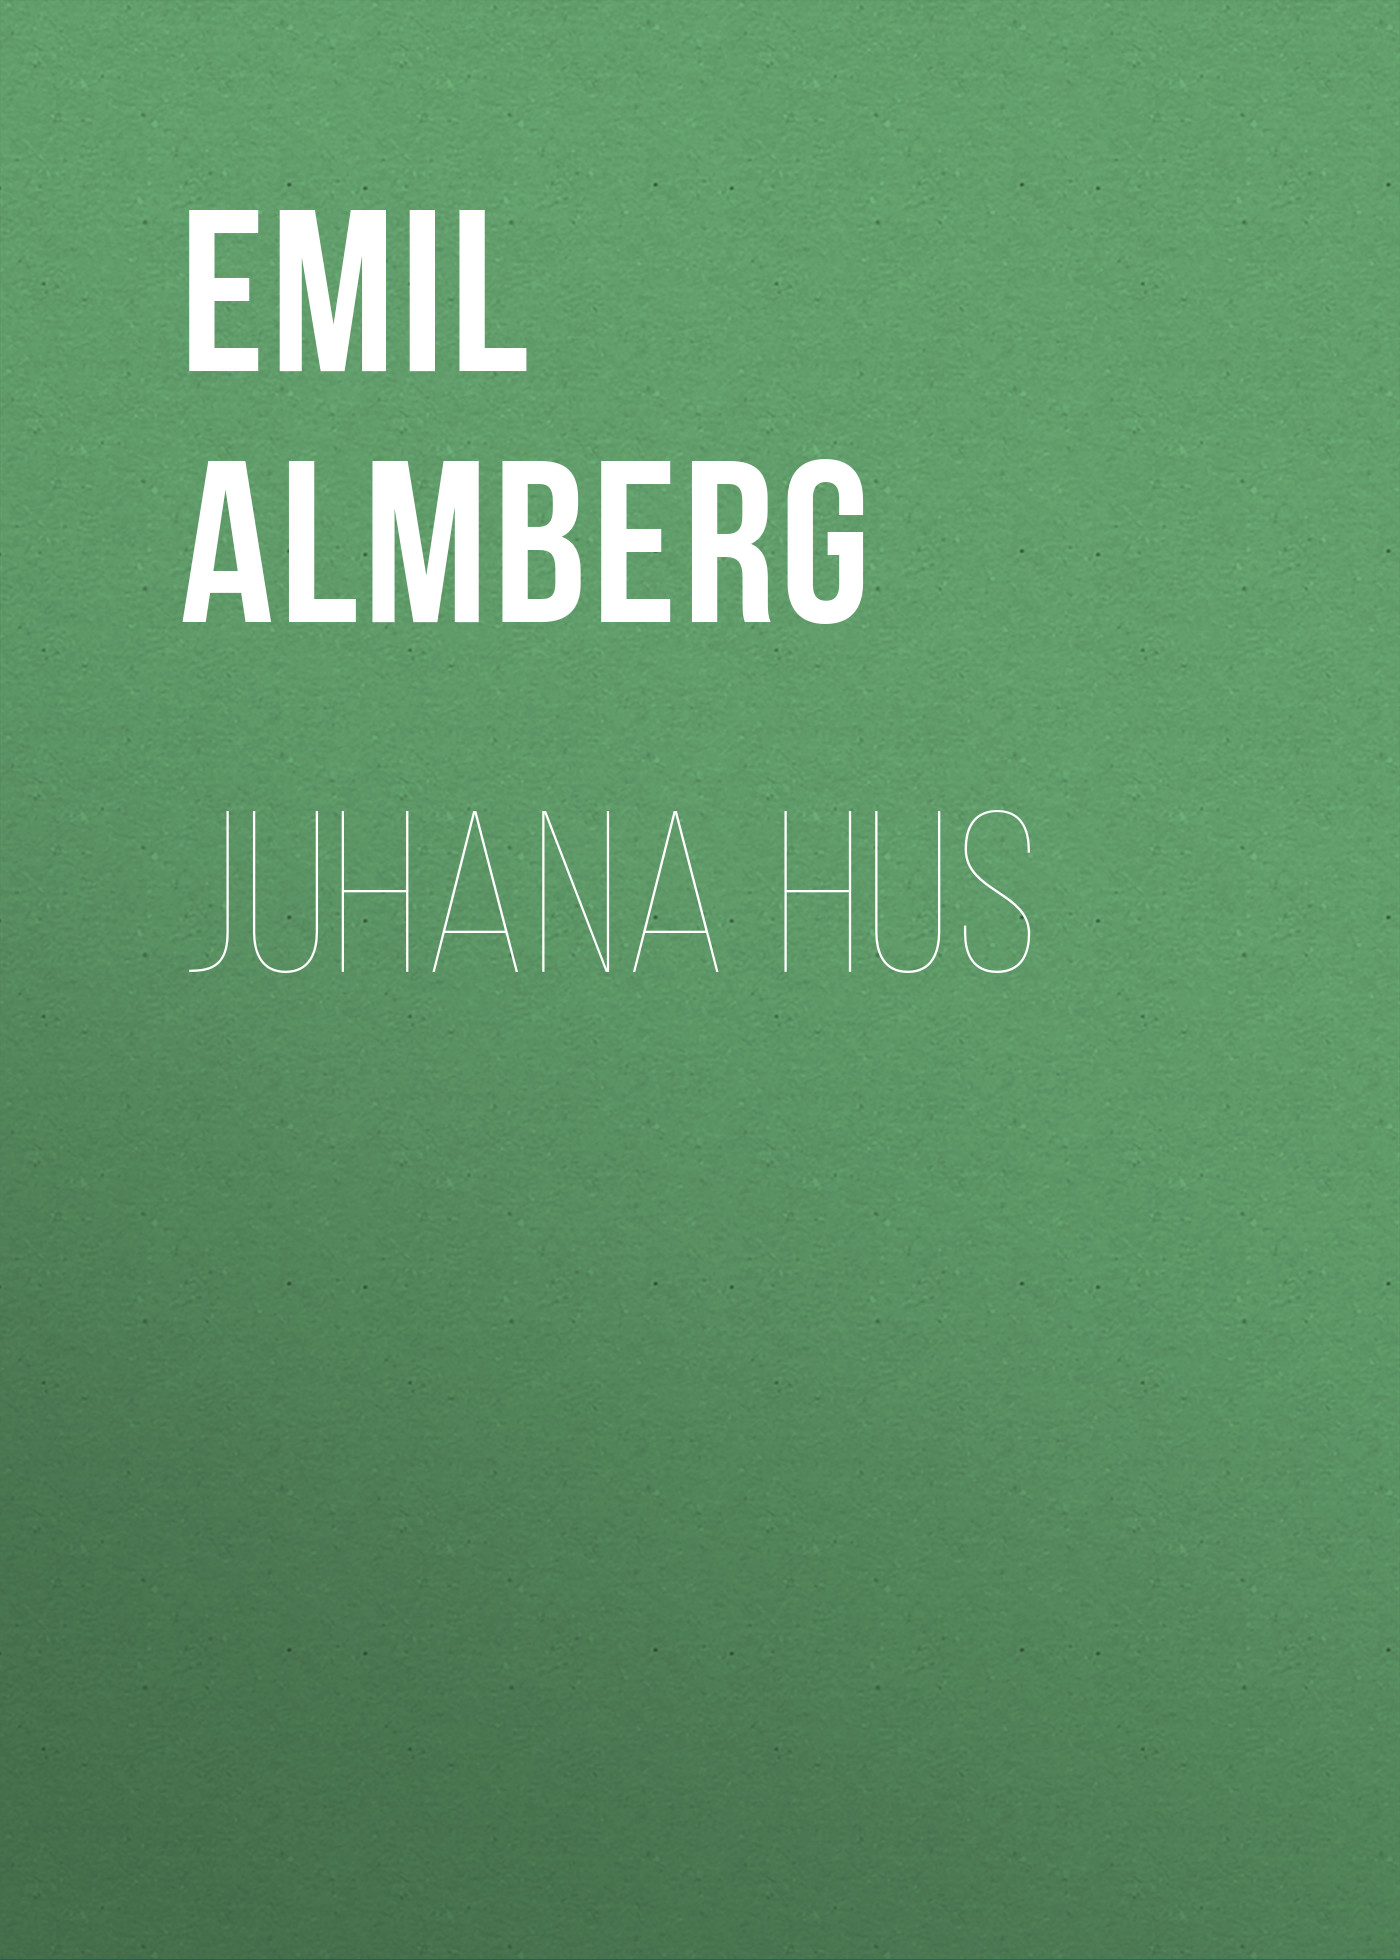 Книга Juhana Hus из серии , созданная Emil Almberg, может относится к жанру Зарубежная старинная литература, Зарубежная классика. Стоимость электронной книги Juhana Hus с идентификатором 24175756 составляет 5.99 руб.